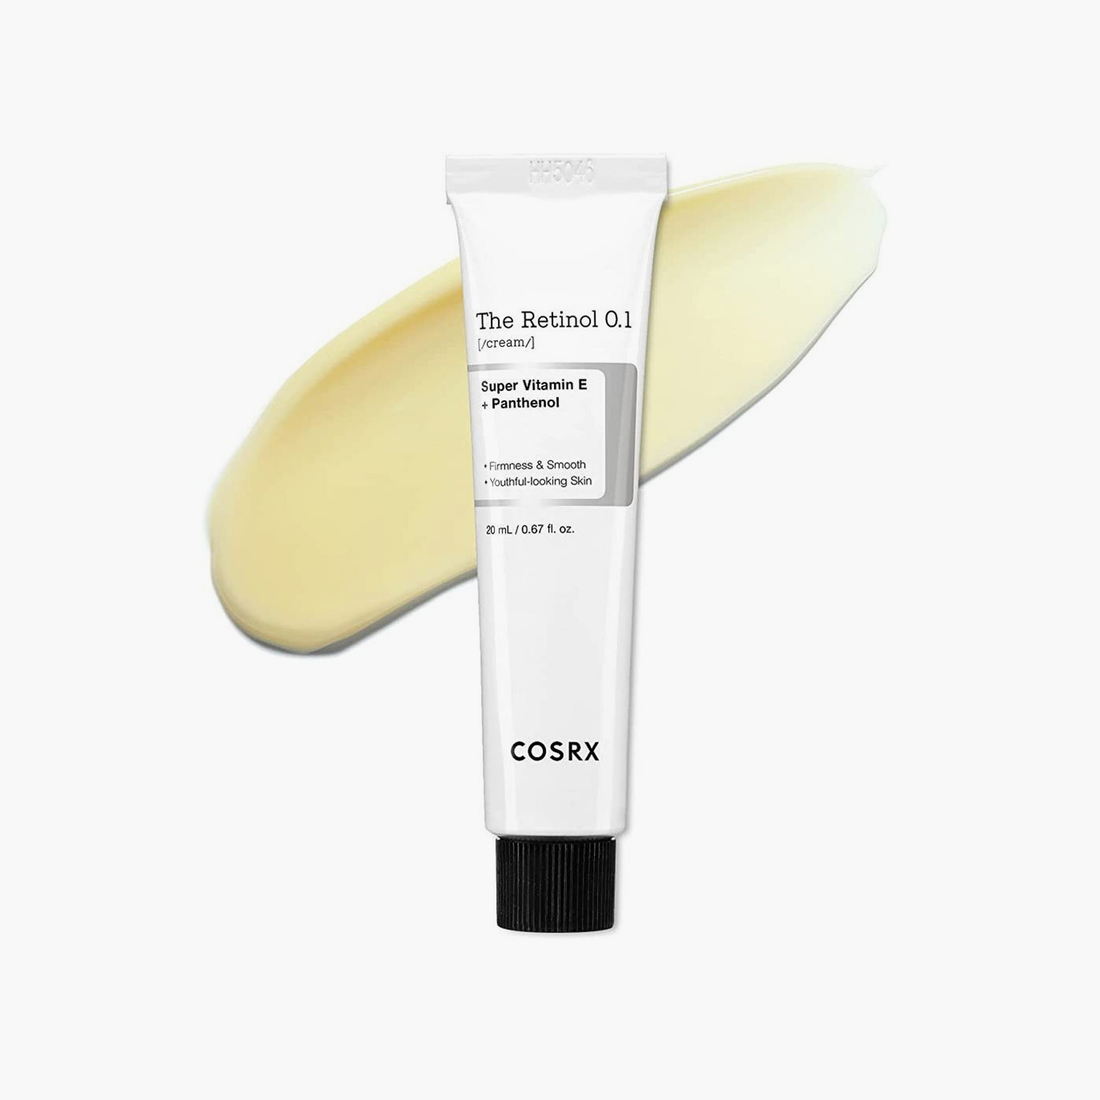 COSRX The Retinol 0.1 Cream Super Vitamin E